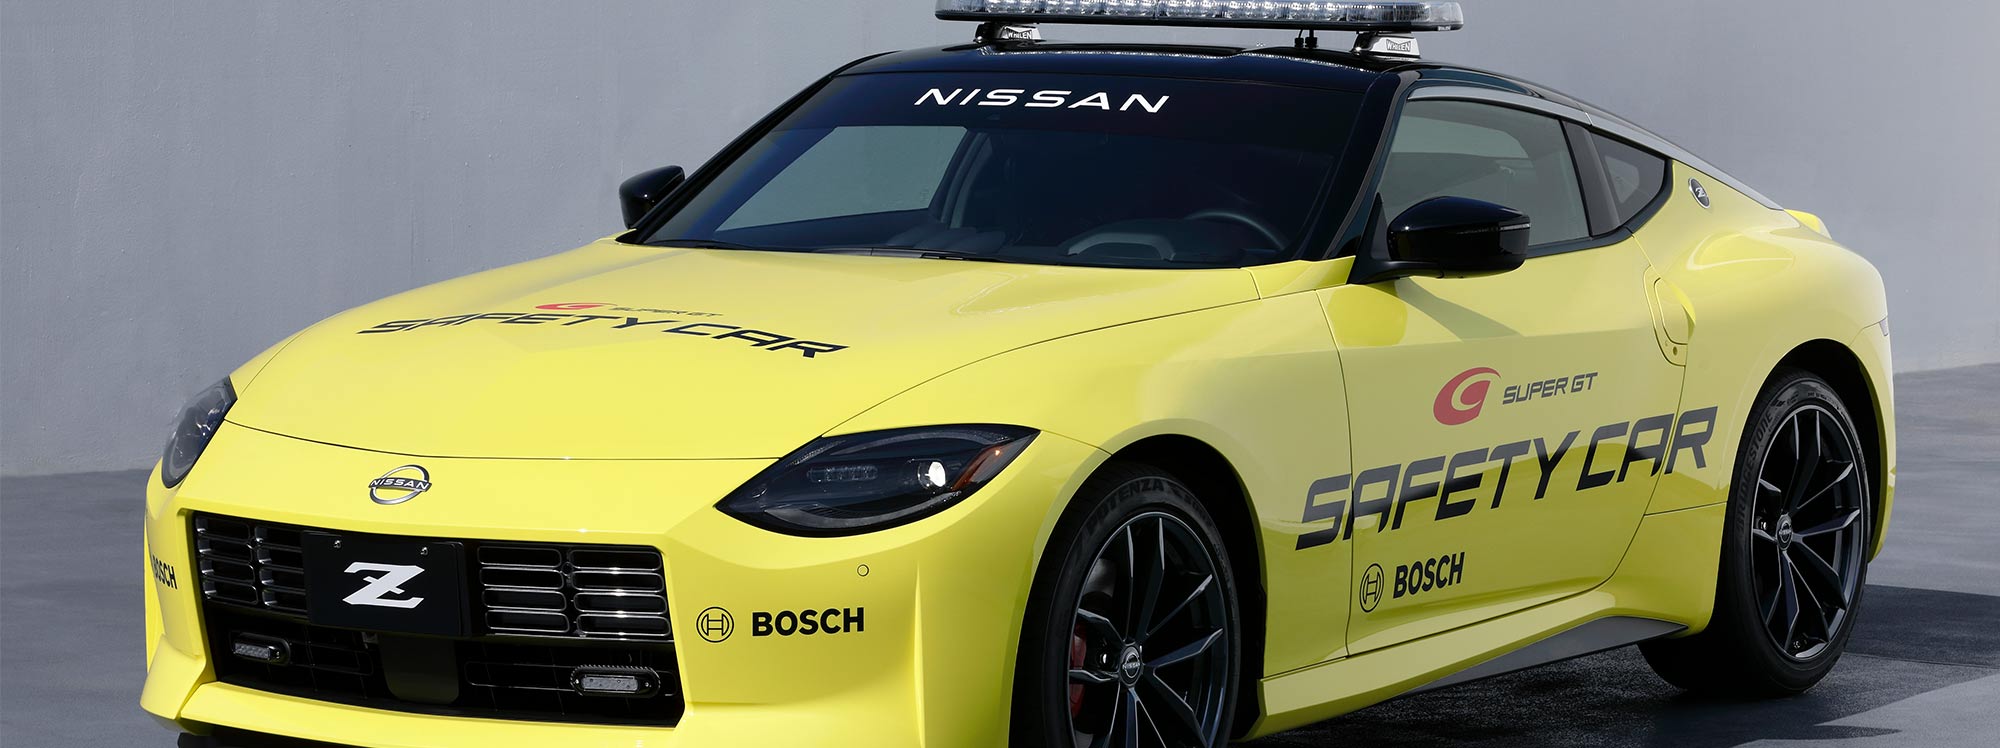 Nissan Z, el vehículo de seguridad oficial del campeonato Super GT